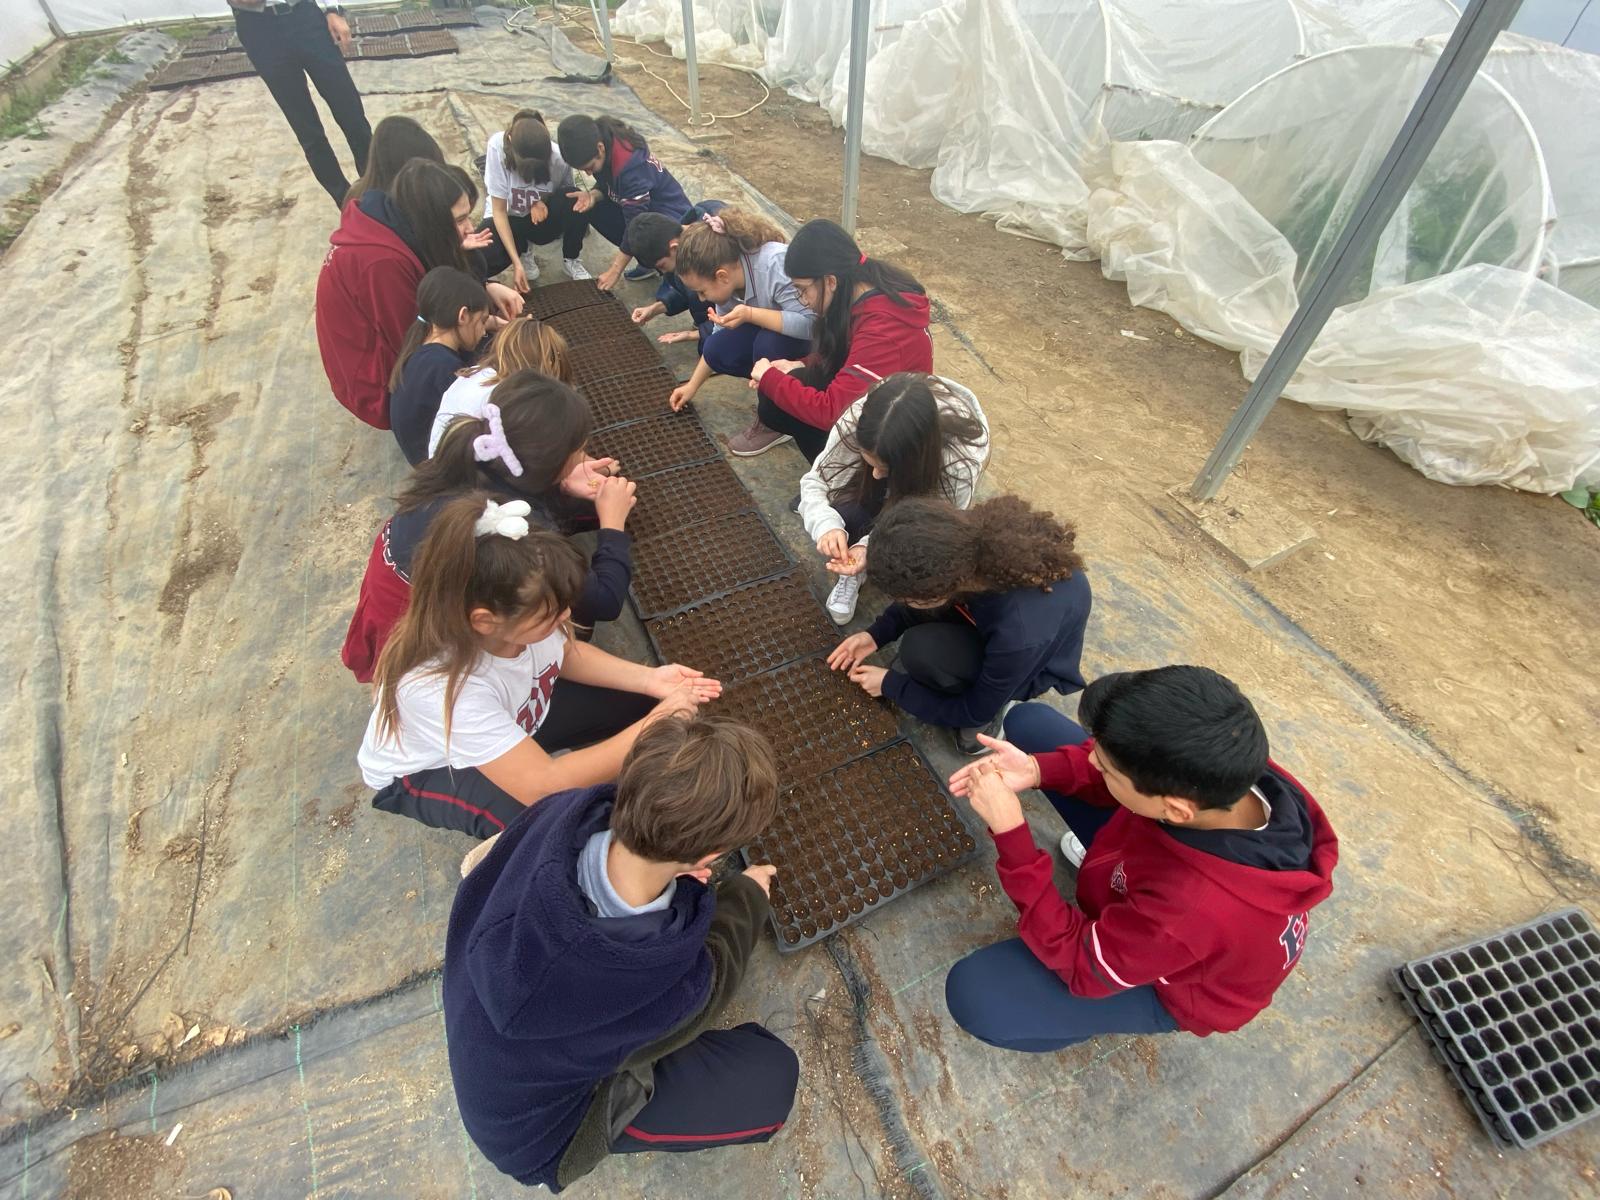 selçuk belediyesi “Tohumdan Sofraya, Sofradan Tohuma” Projesi ile Efes Tarlası Yaşam Köyü’nde çocuklar toprakla buluşuyor, üretimin tohum ile başlayan yolculuğuna tanık oluyor.